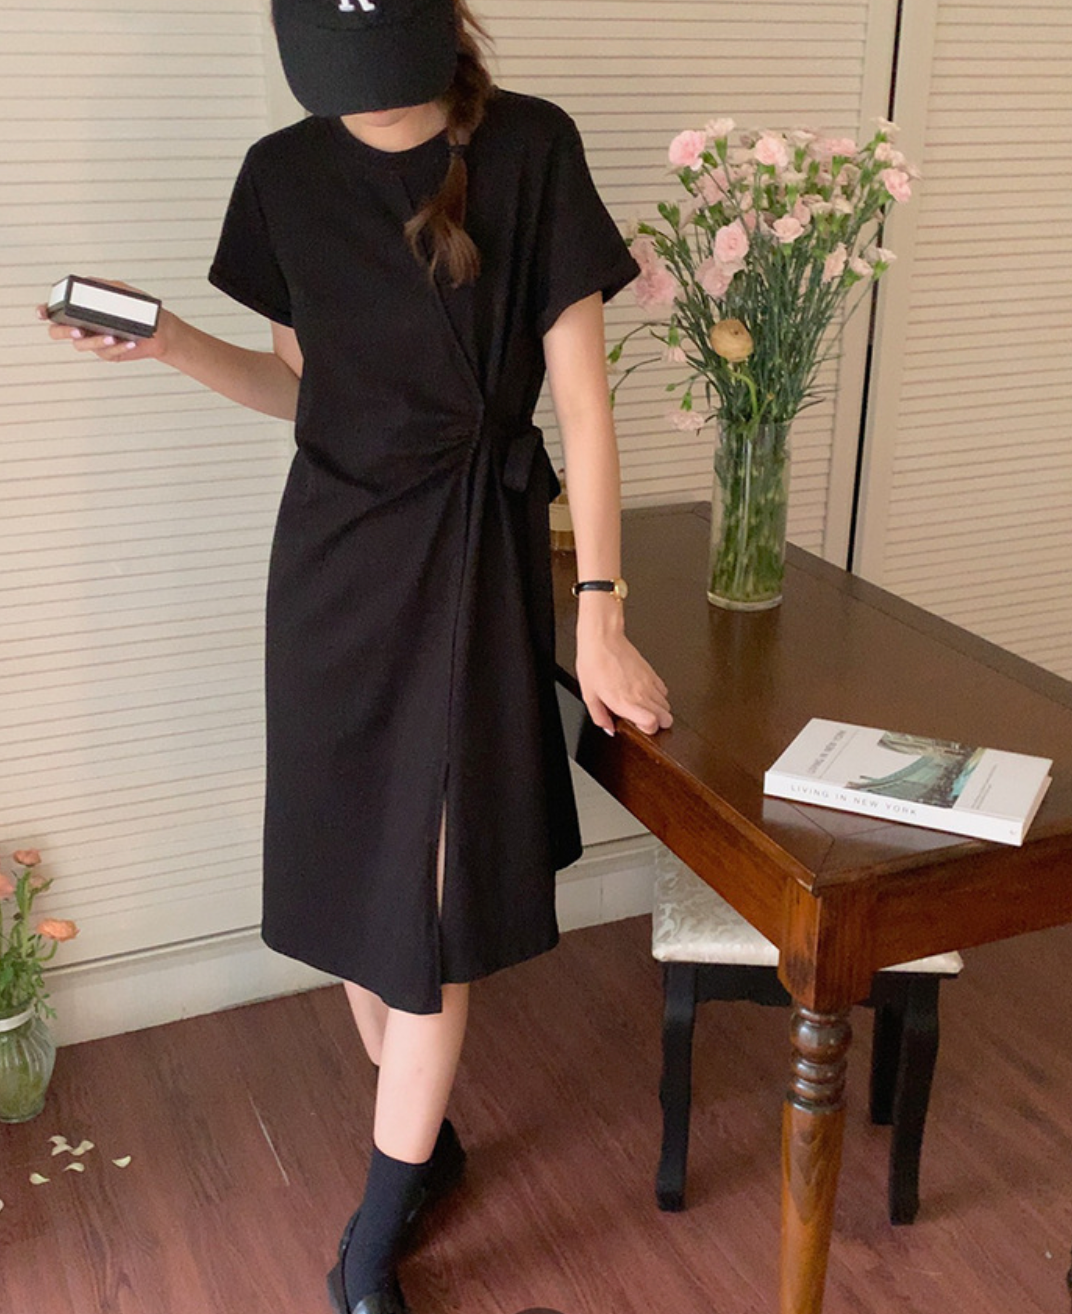 [Korean Style] Solid Color Belted Short Sleeve Knee-length Slit Dress